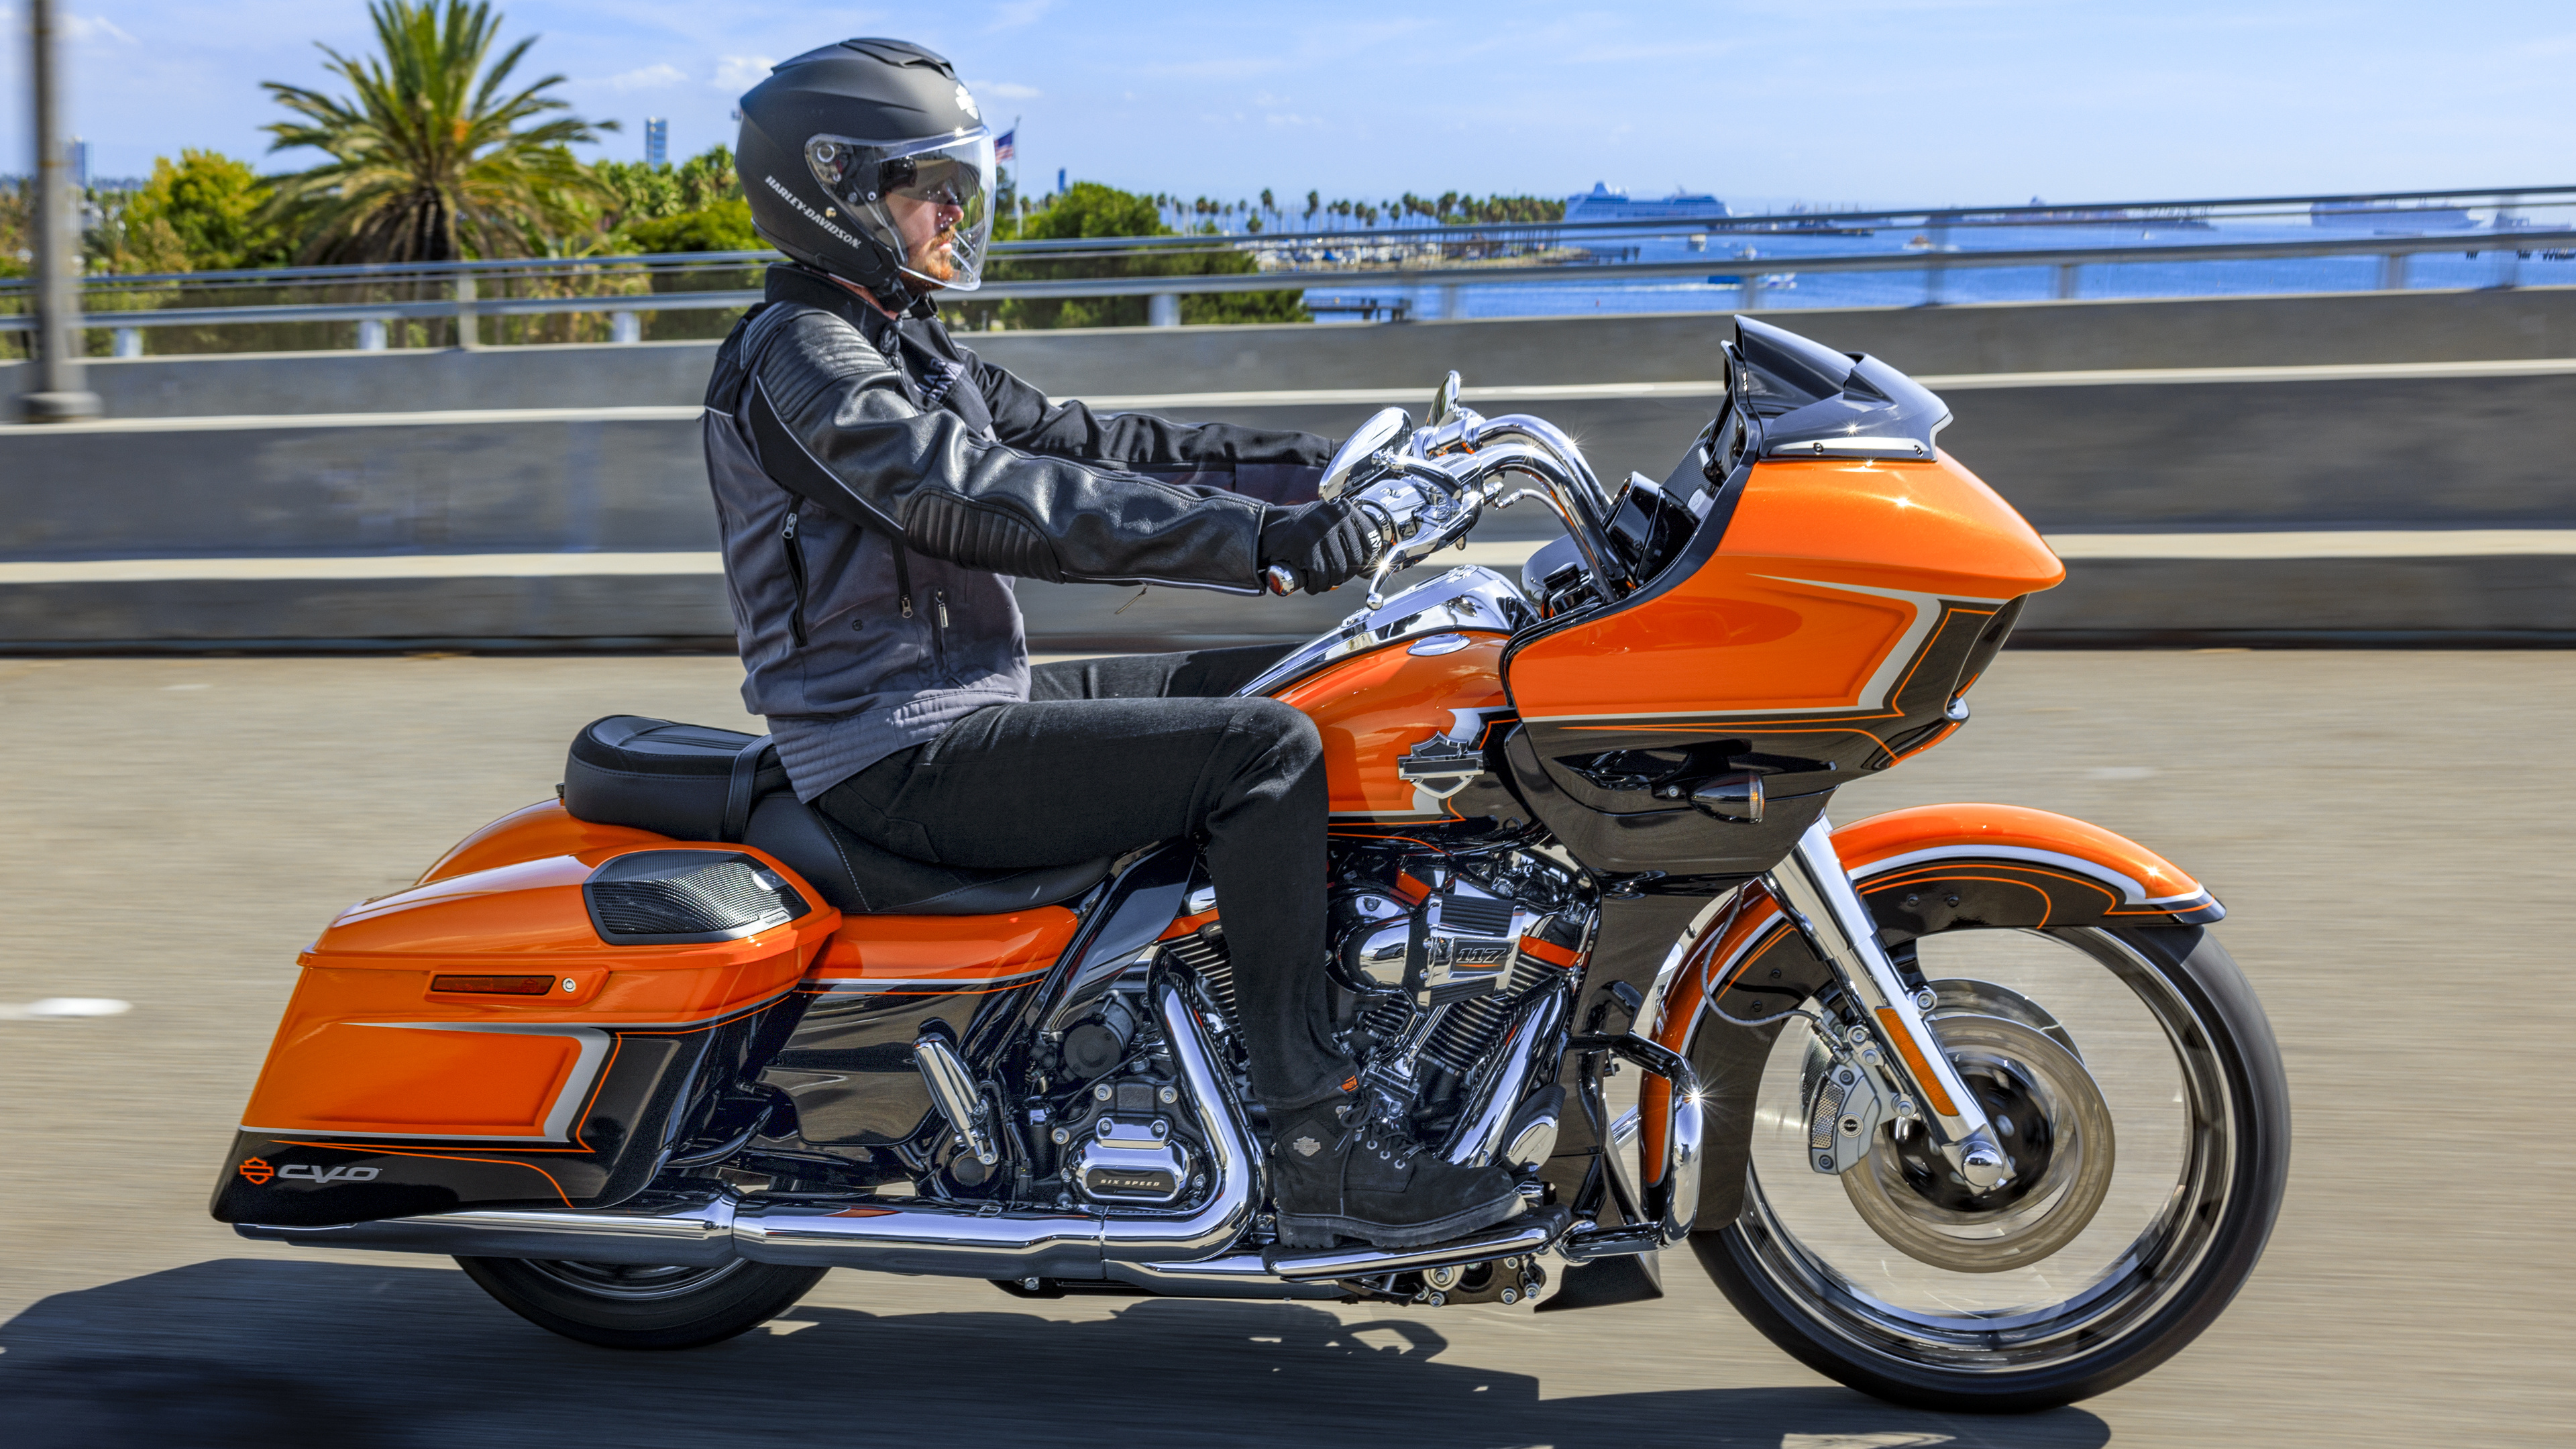 Harley-Davidson Road Glide, CVO Road Glide, Baujahr 2022, 3840x2160 4K Desktop